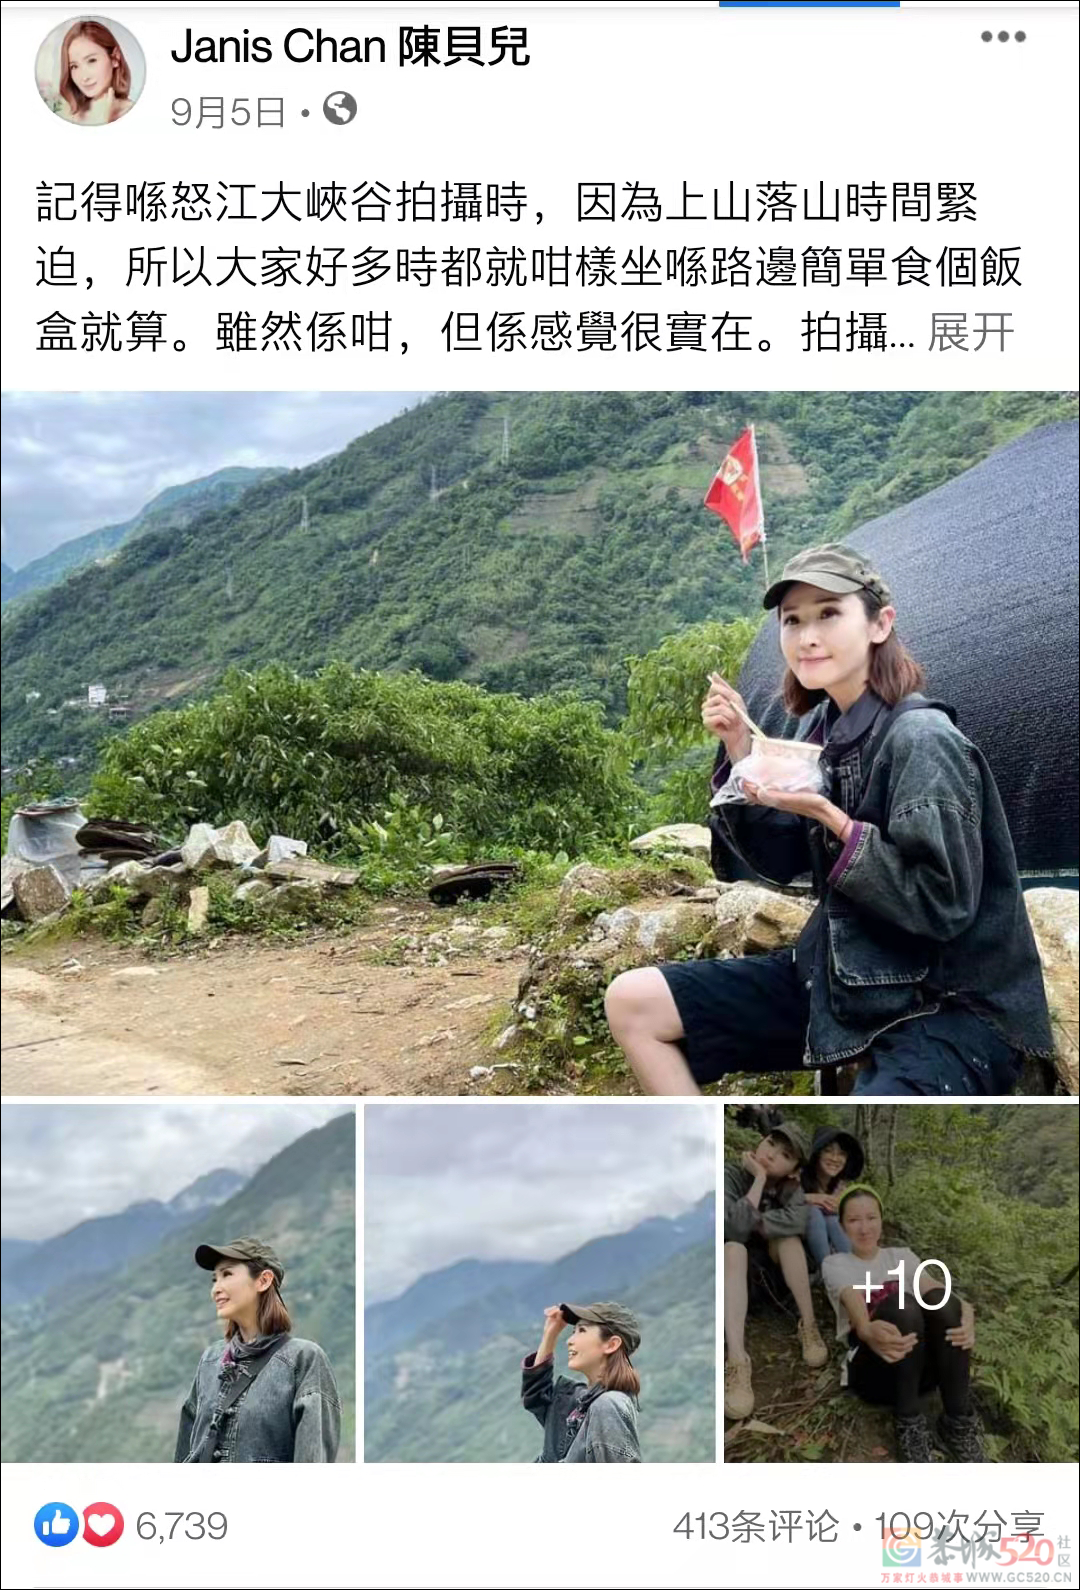 豆瓣9.5，TVB拍了一部香港人视角下的扶贫纪录片226 / 作者:该做的事情 / 帖子ID:288955